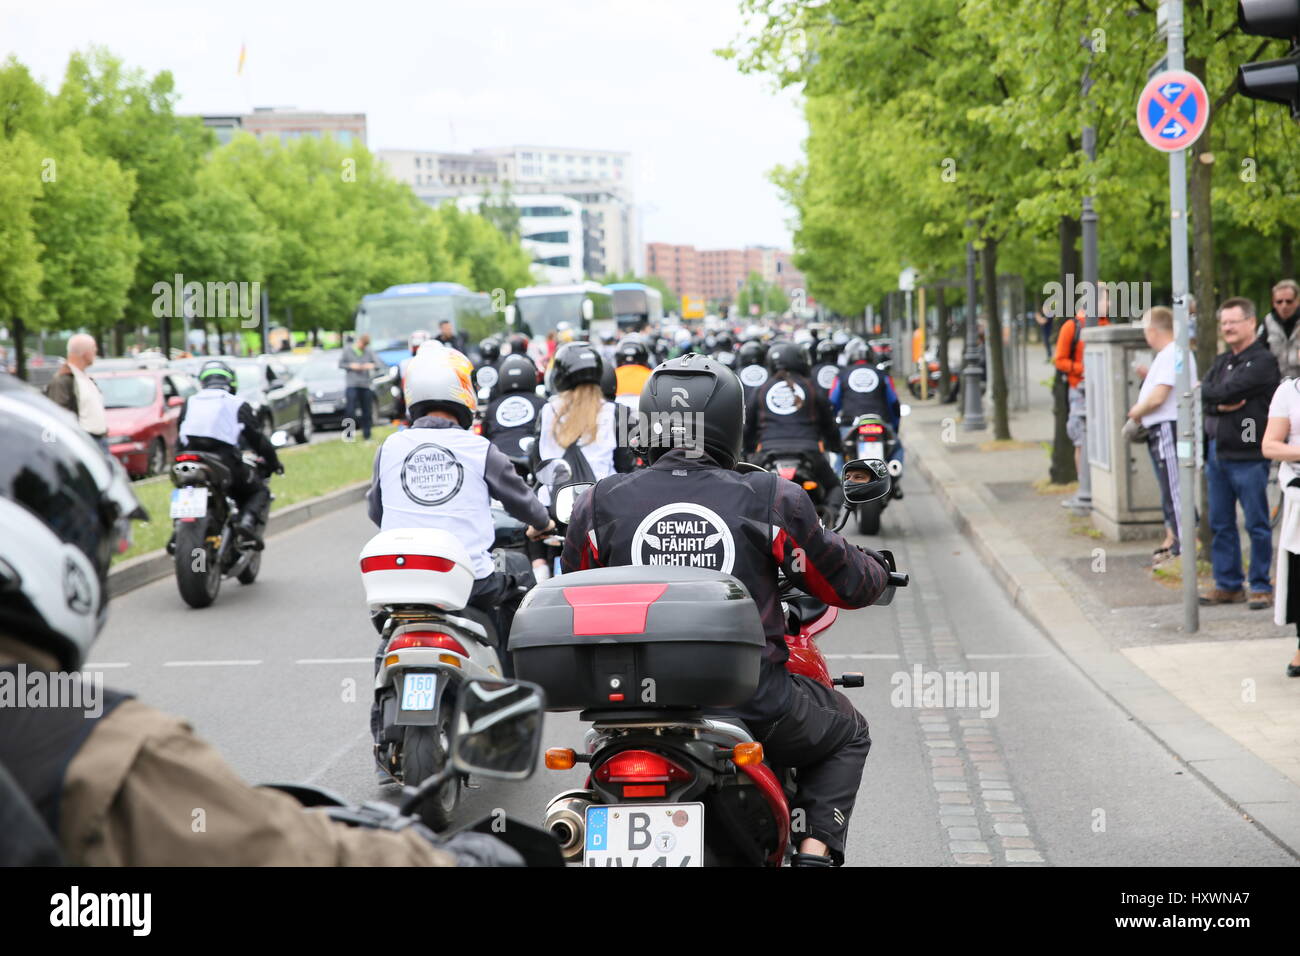 Berlin, Deutschland, 9. Mai 2015: Biker Fahrt gegen Gewalt zu protestieren. Stockfoto